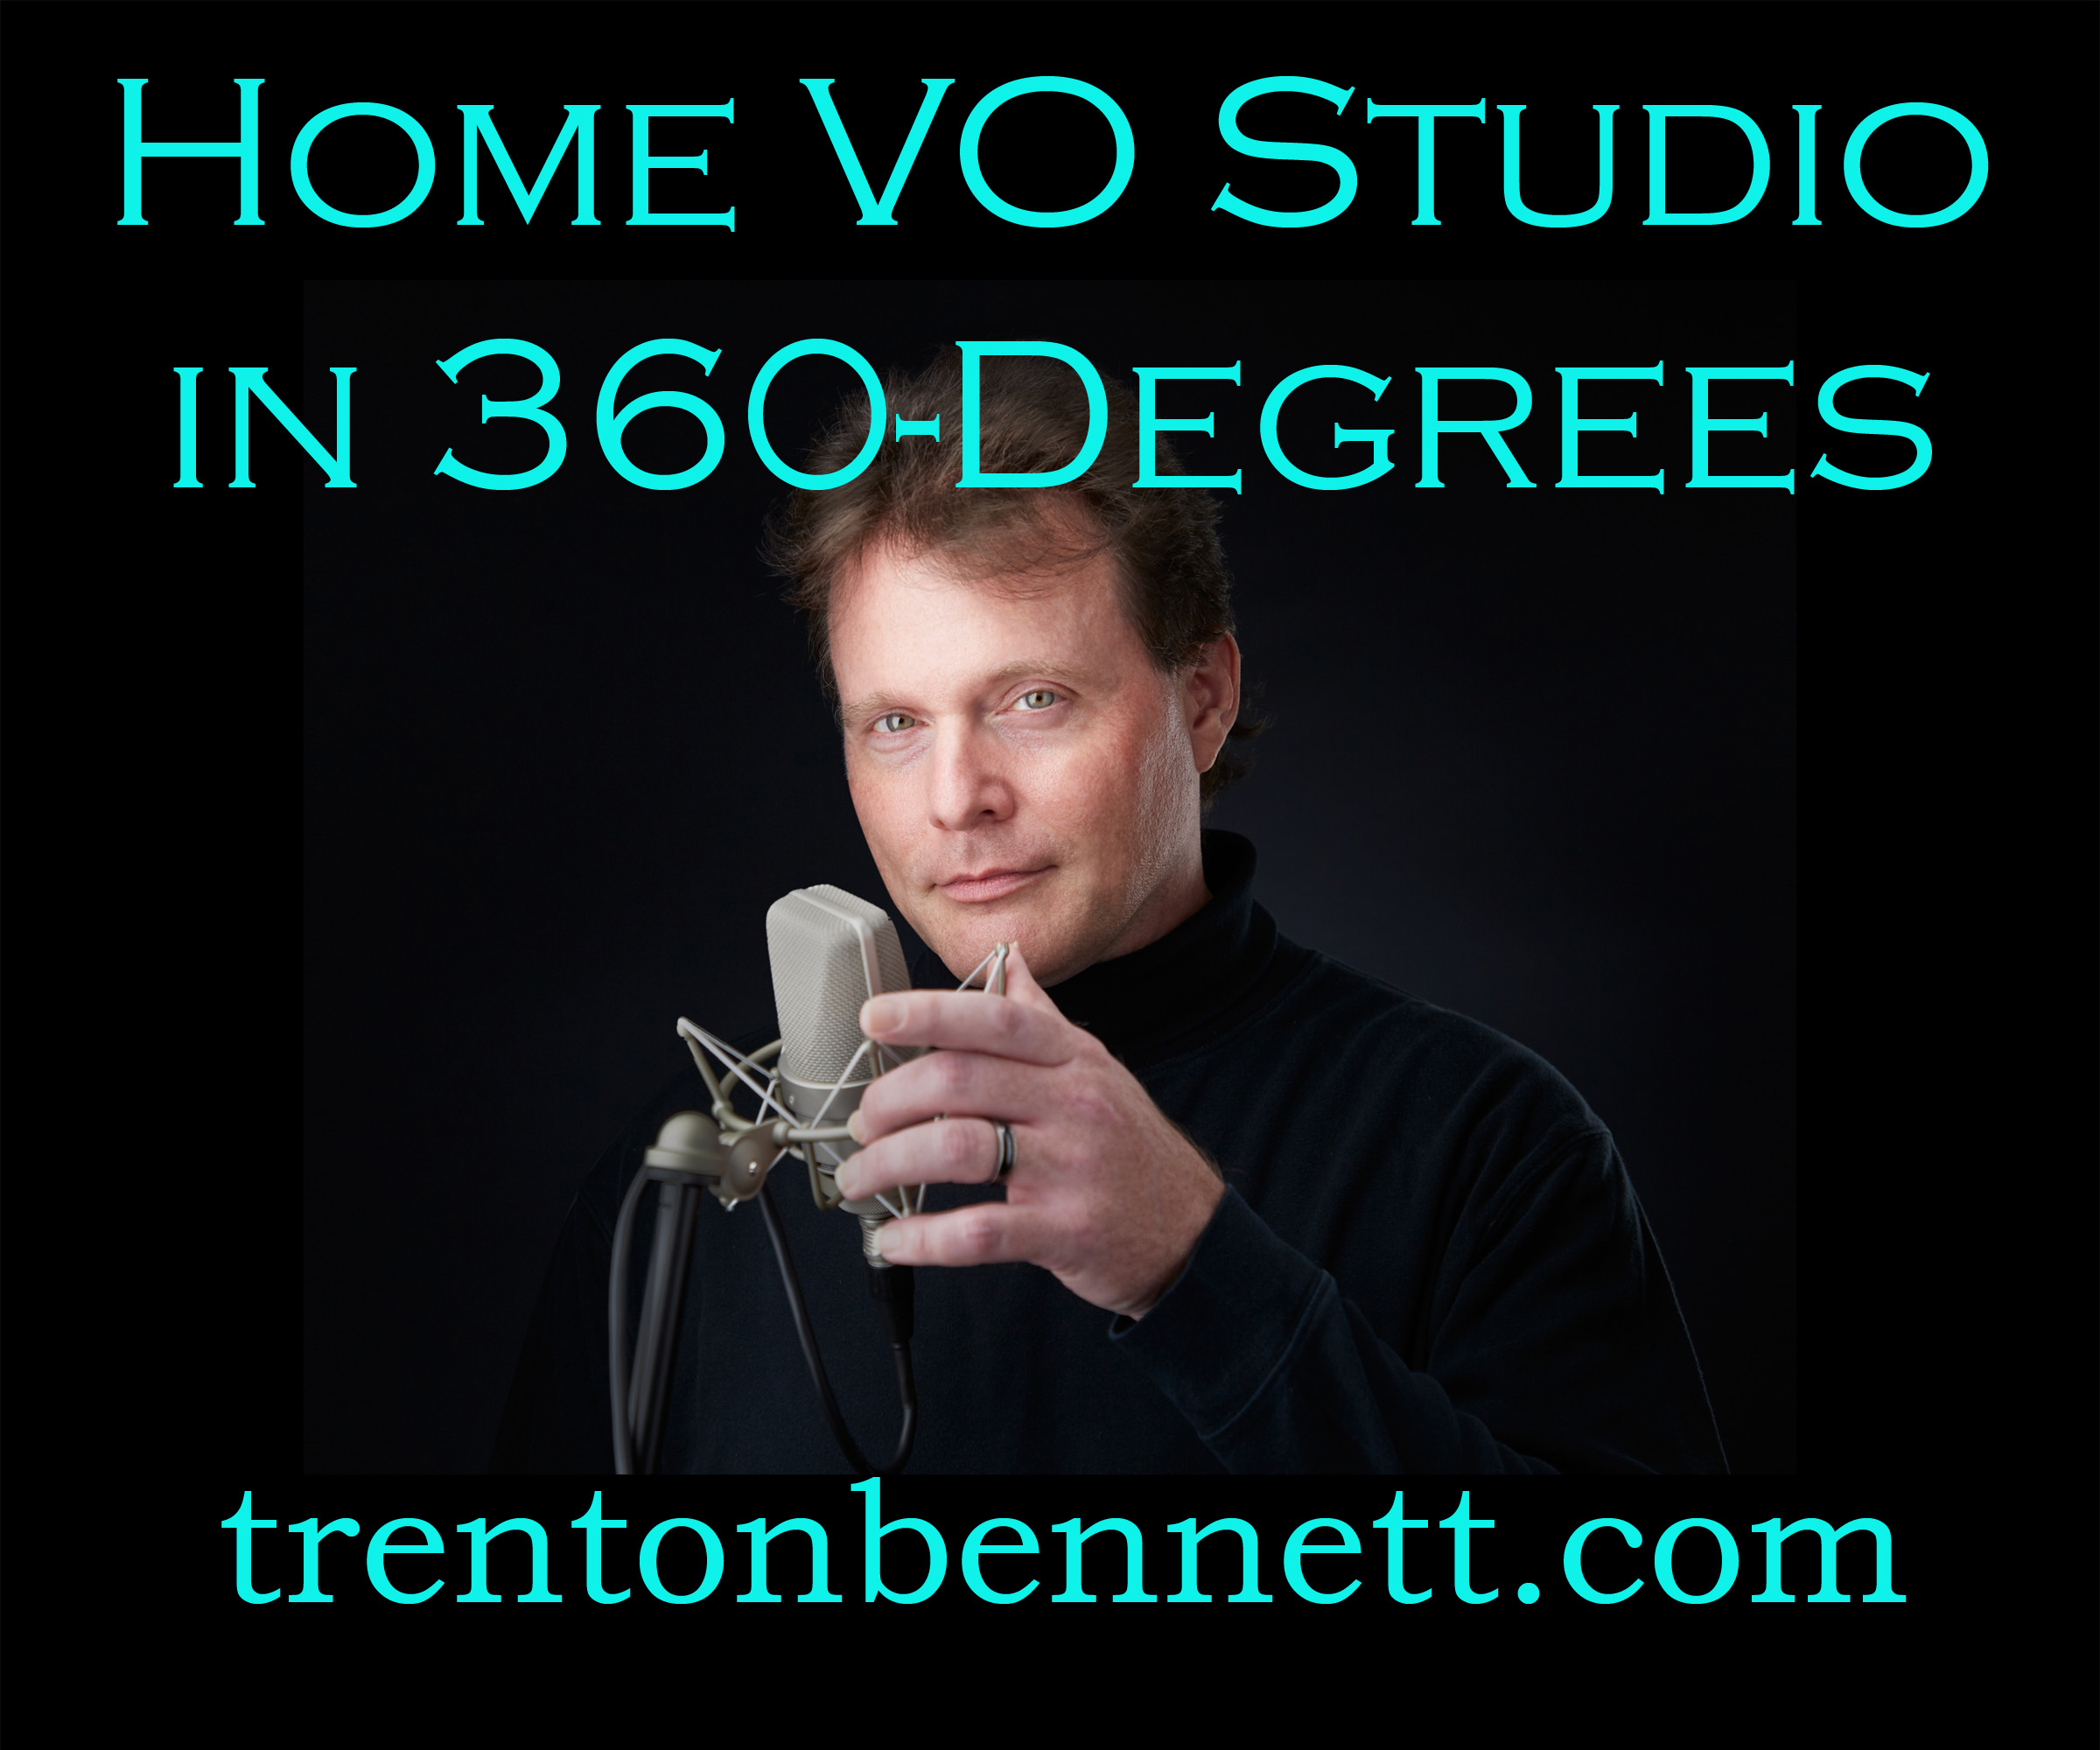 Trenton Bennett 360-degree studio tour on YouTube (video)